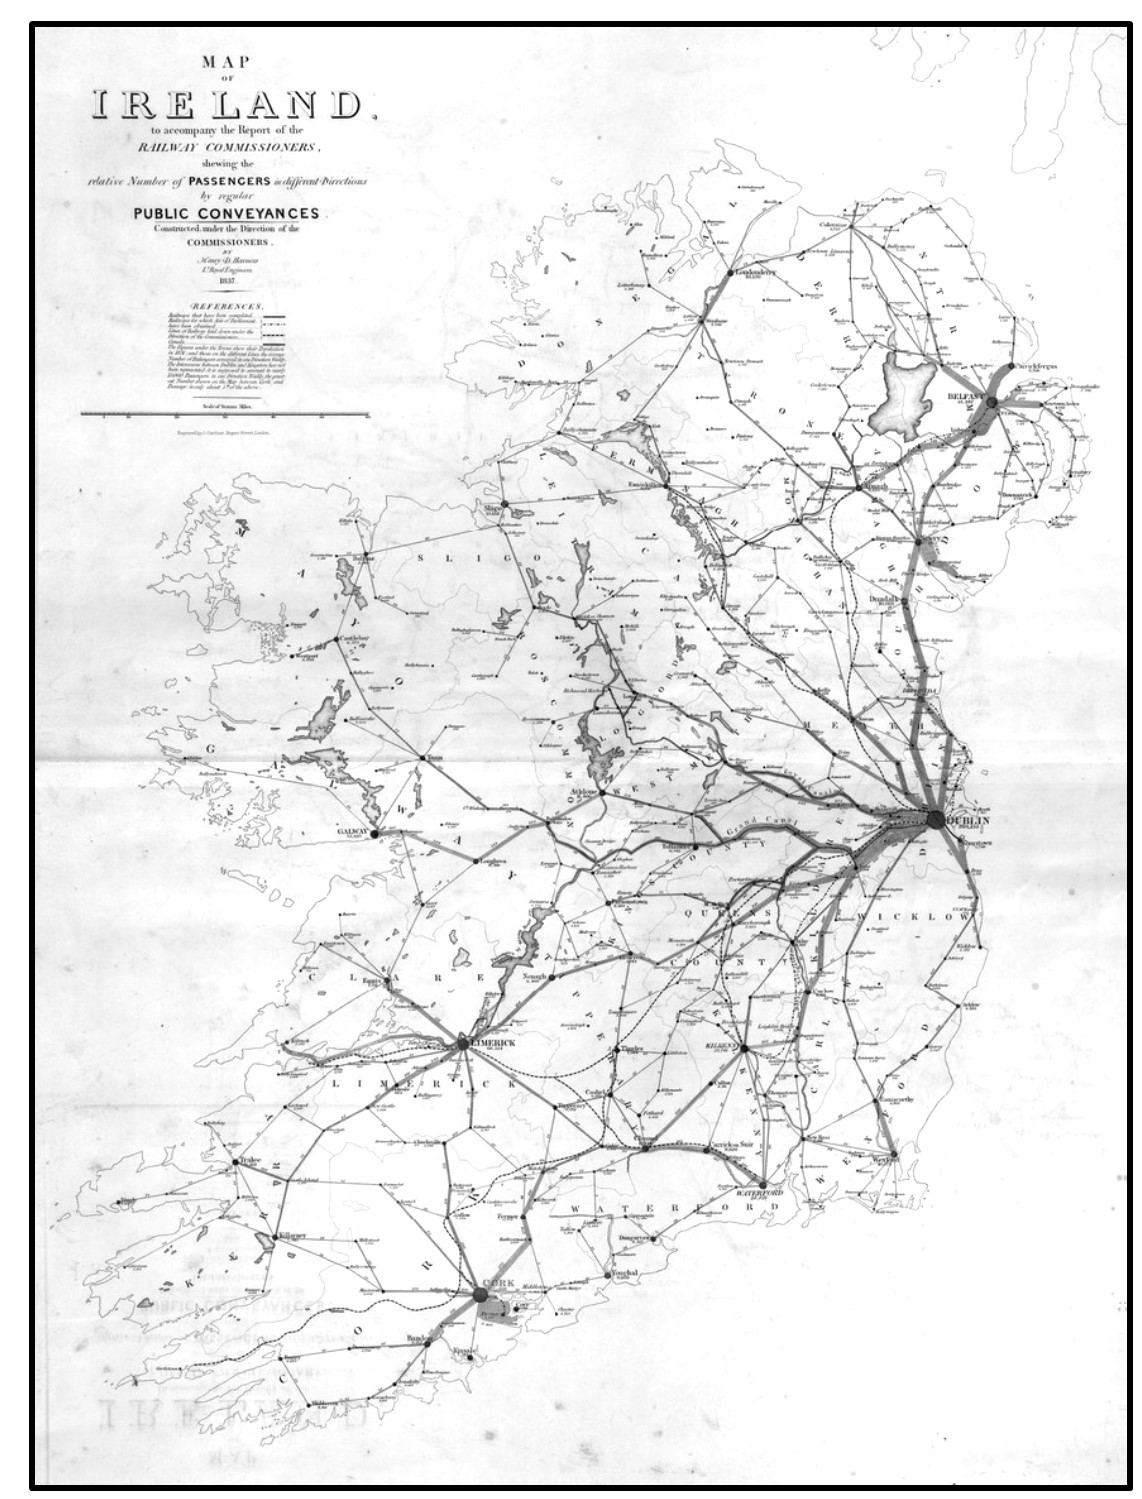 Rail flows out of Dublin